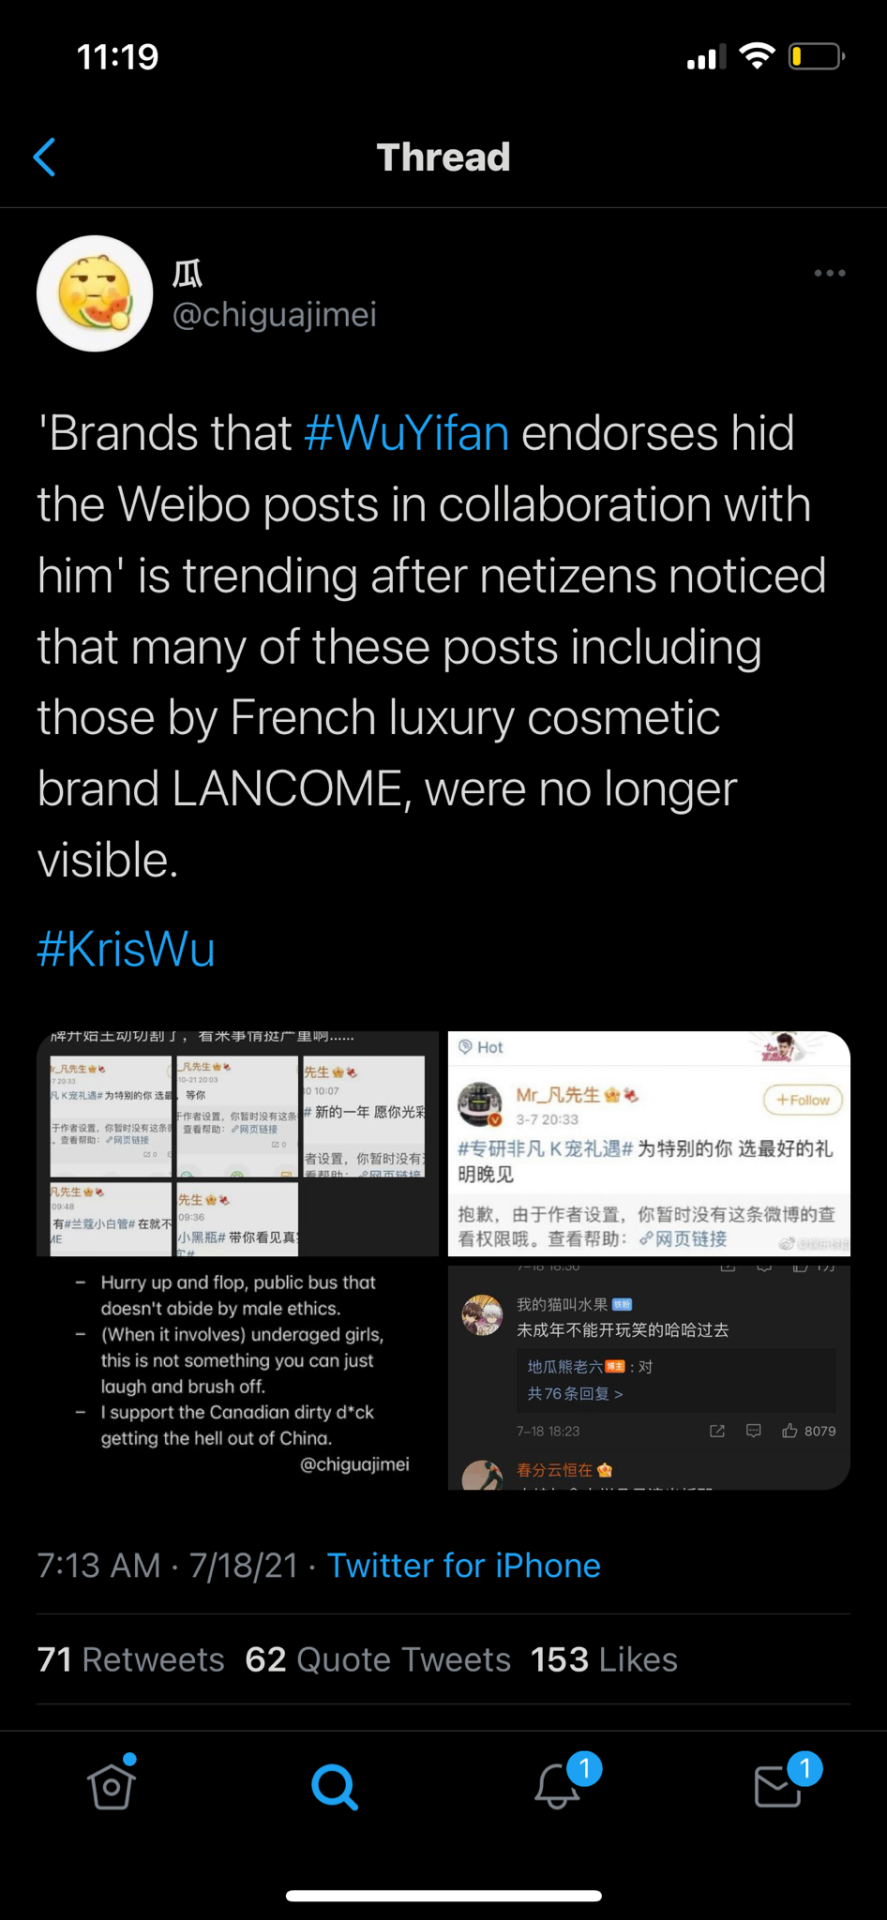 Kris Wu remains buoyant despite kinky sex allegations - PressReader